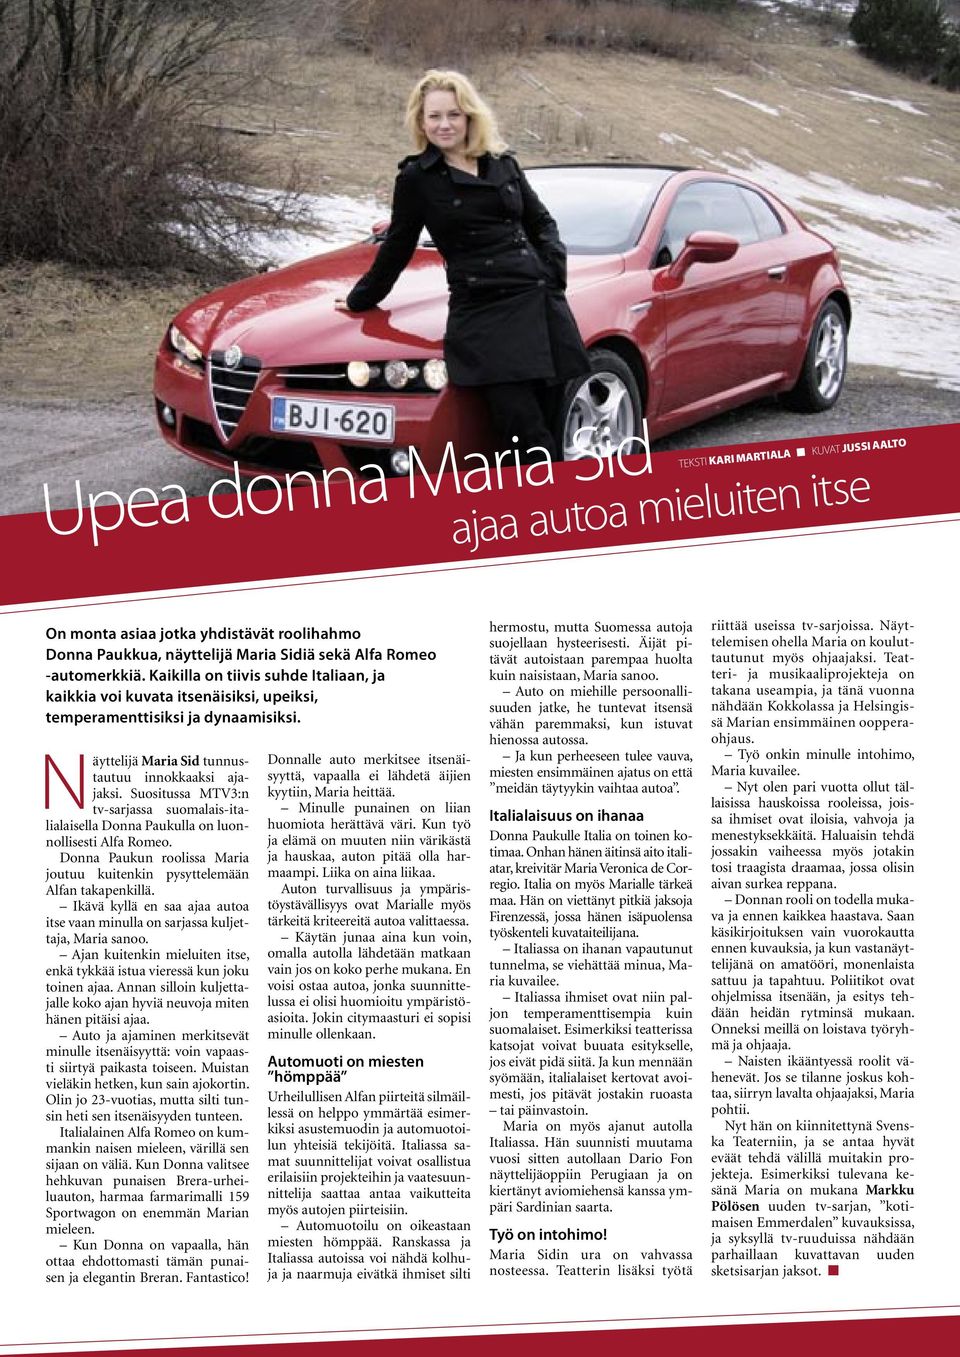 Suositussa MTV3:n tv-sarjassa suomalais-italialaisella Donna Paukulla on luonnollisesti Alfa Romeo. Donna Paukun roolissa Maria joutuu kuitenkin pysyttelemään Alfan takapenkillä.